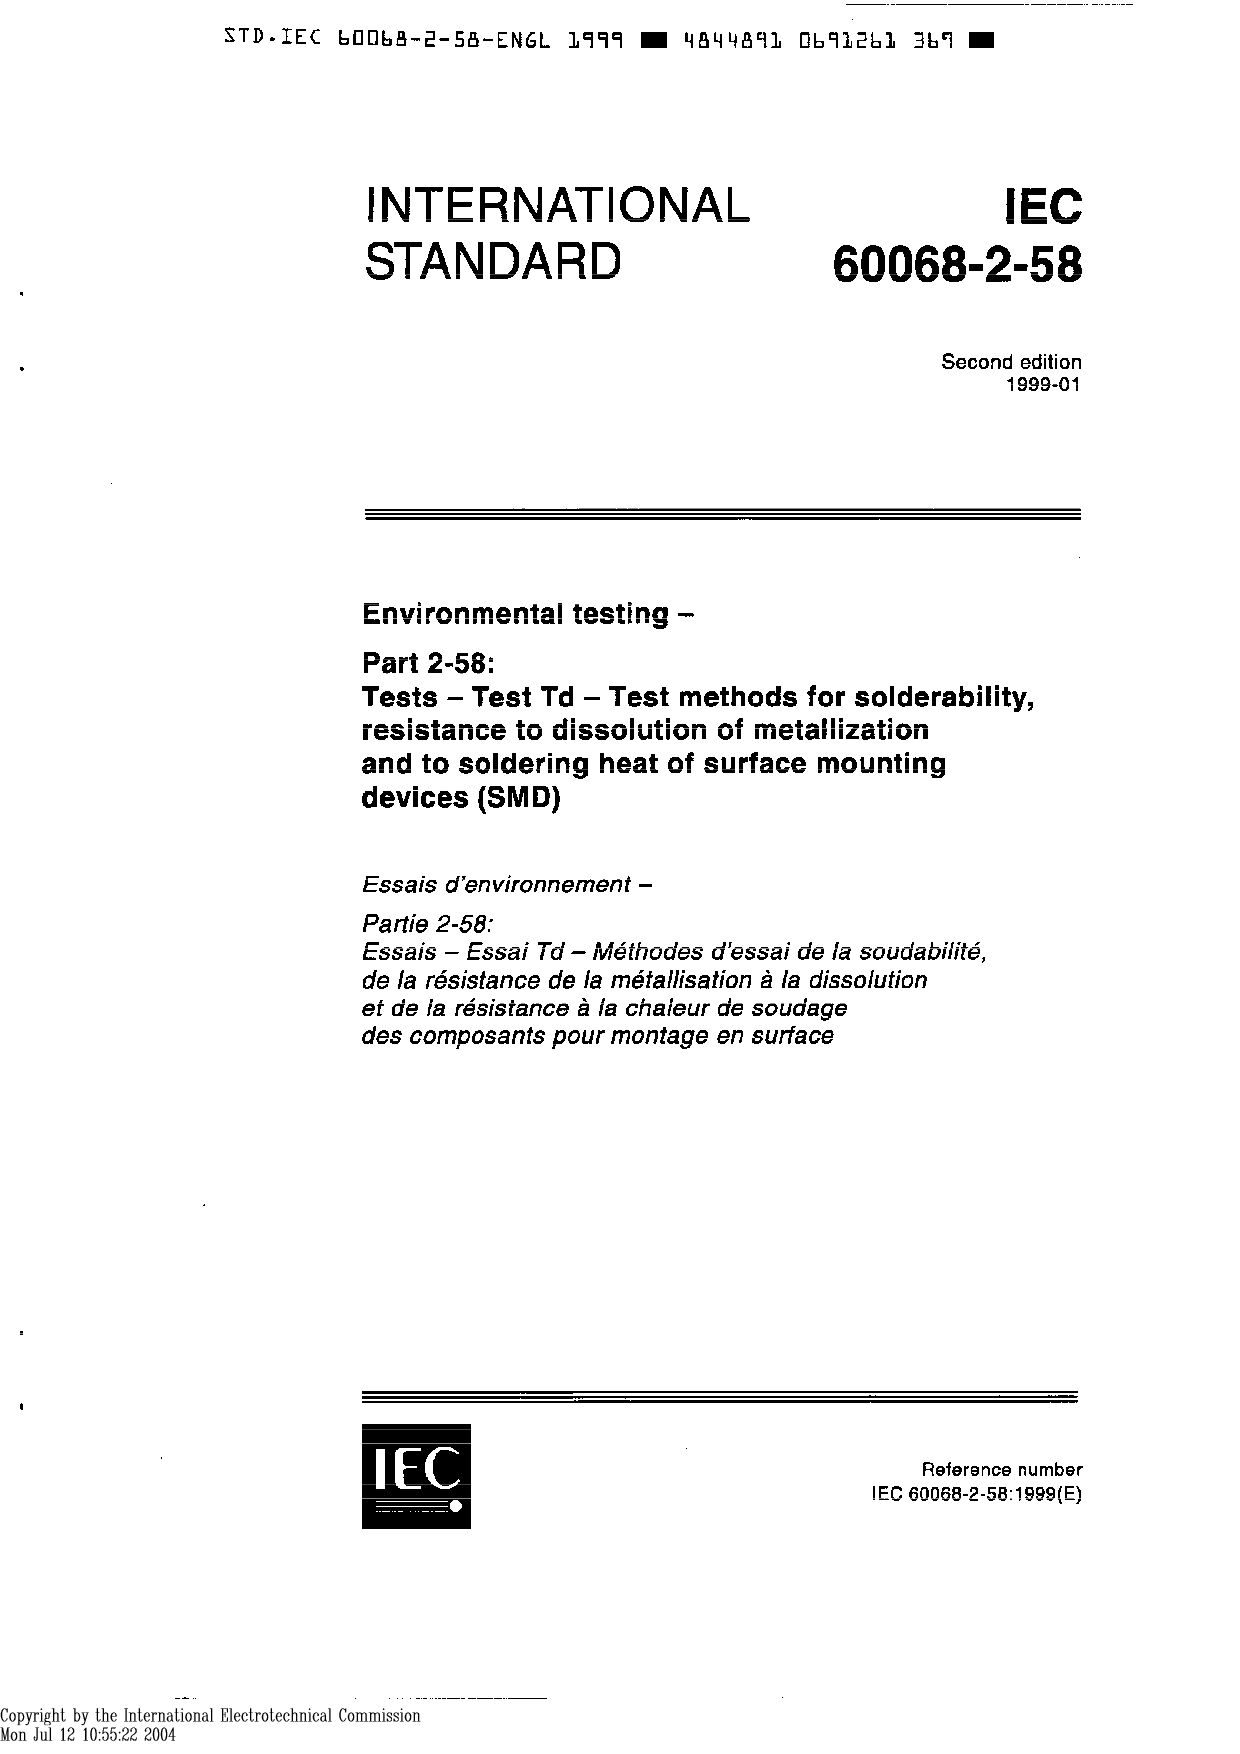 IEC 60068-2-58:1999